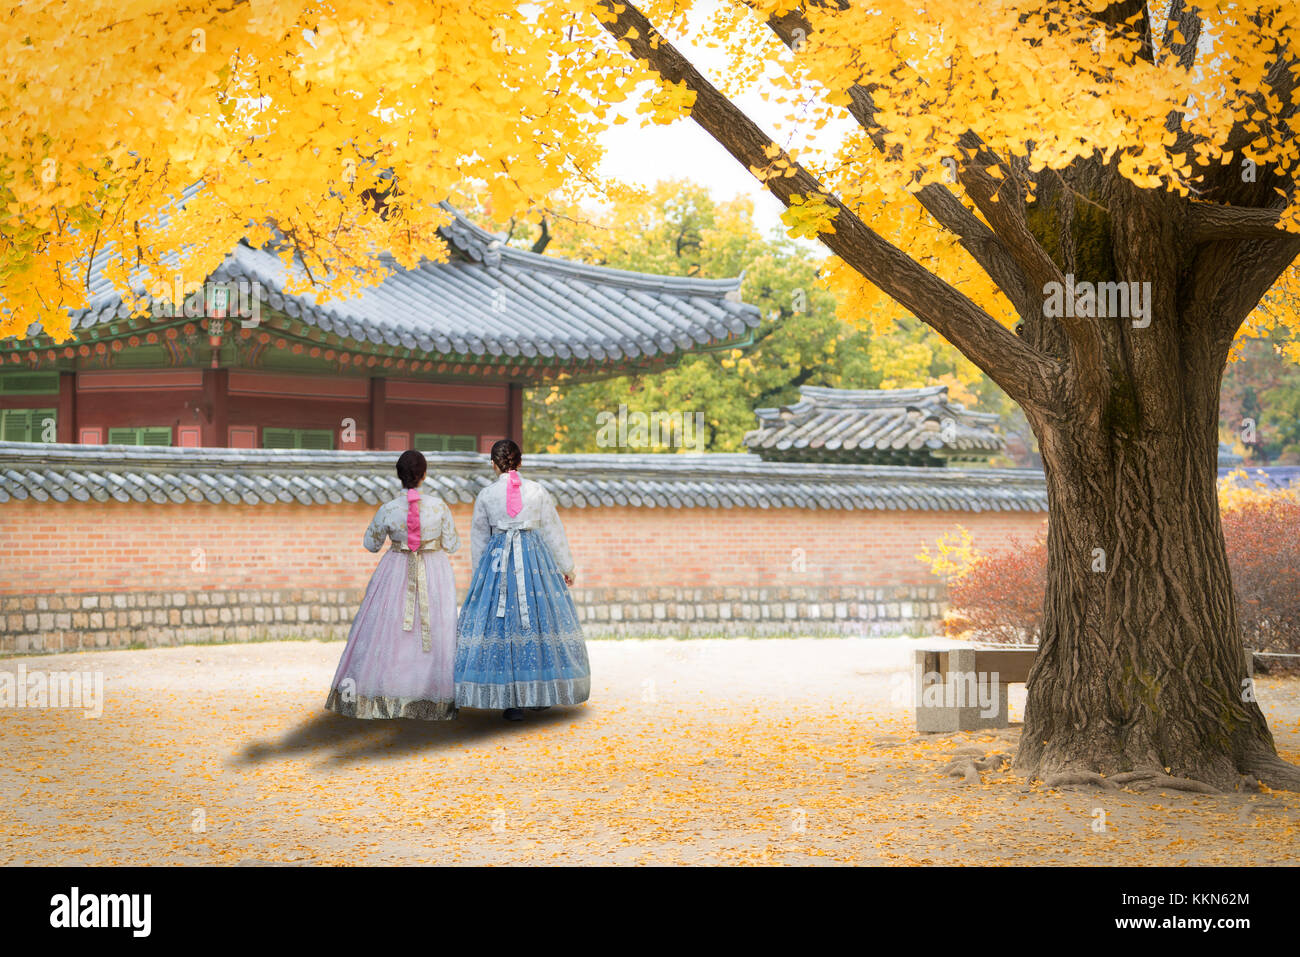 Asiatische koreanische Frau gekleidet hanbok in traditioneller Kleidung wandern in Gyeongbokgung Palast im Herbst Saison in Seoul, Südkorea. Stockfoto